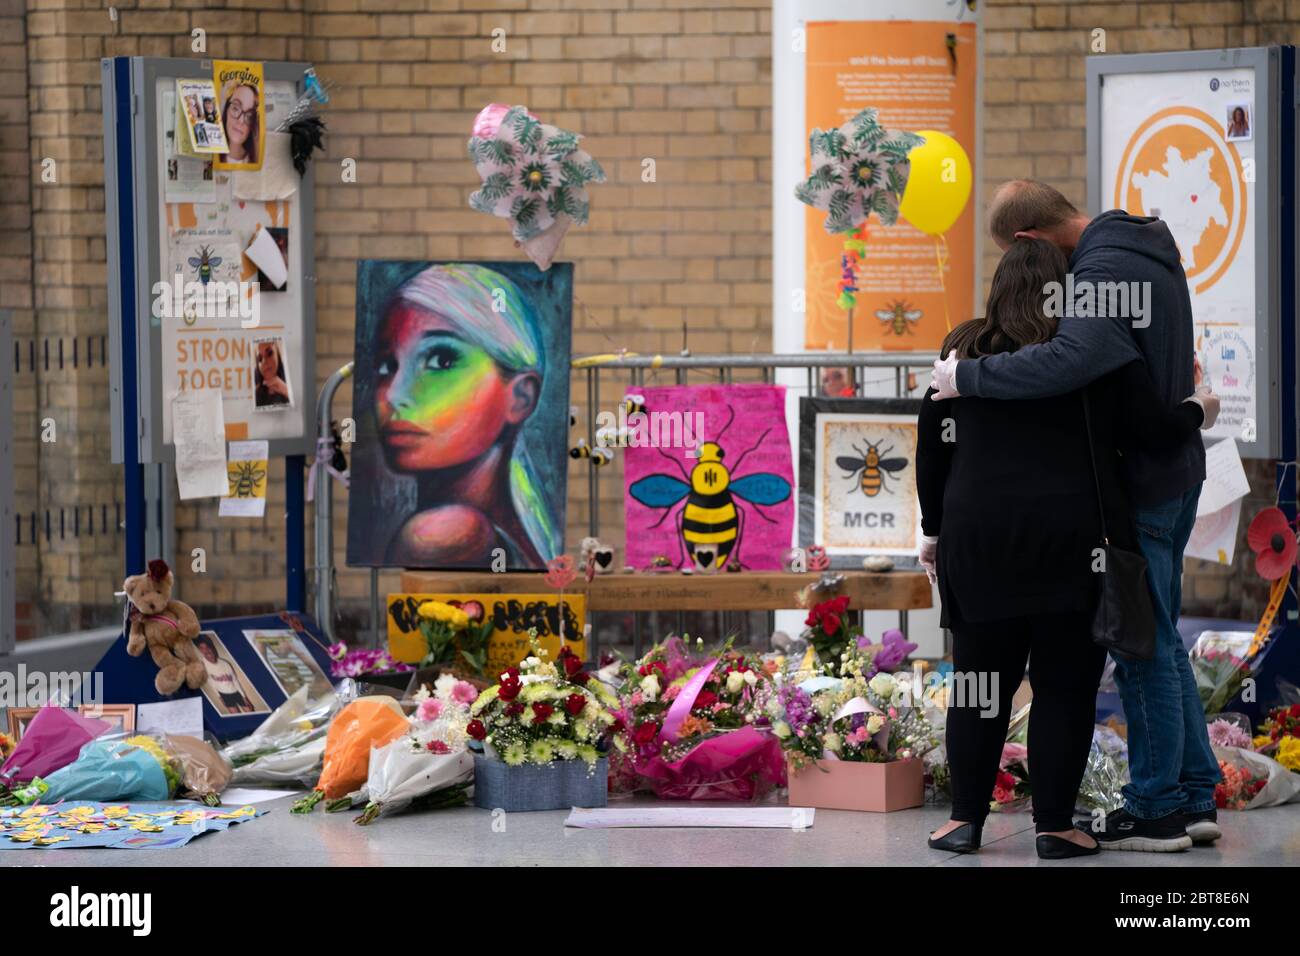 Peking, Mai 22. Mai 2017. Die Menschen trauern bei einem Gedenkort des Angriffs auf die Manchester Arena in Manchester, Großbritannien, am 22. Mai 2020. Manchester am Freitag war der dritte Jahrestag des Terroranschlags, bei dem 22 Menschen getötet und Hunderte verletzt wurden. Der Angriff geschah, als Salman Abedi am Ende eines Konzerts der US-Popsängerin Ariana Grande am 22. Mai 2017 eine Bombe zündete. Kredit: Jon Super/Xinhua/Alamy Live News Stockfoto